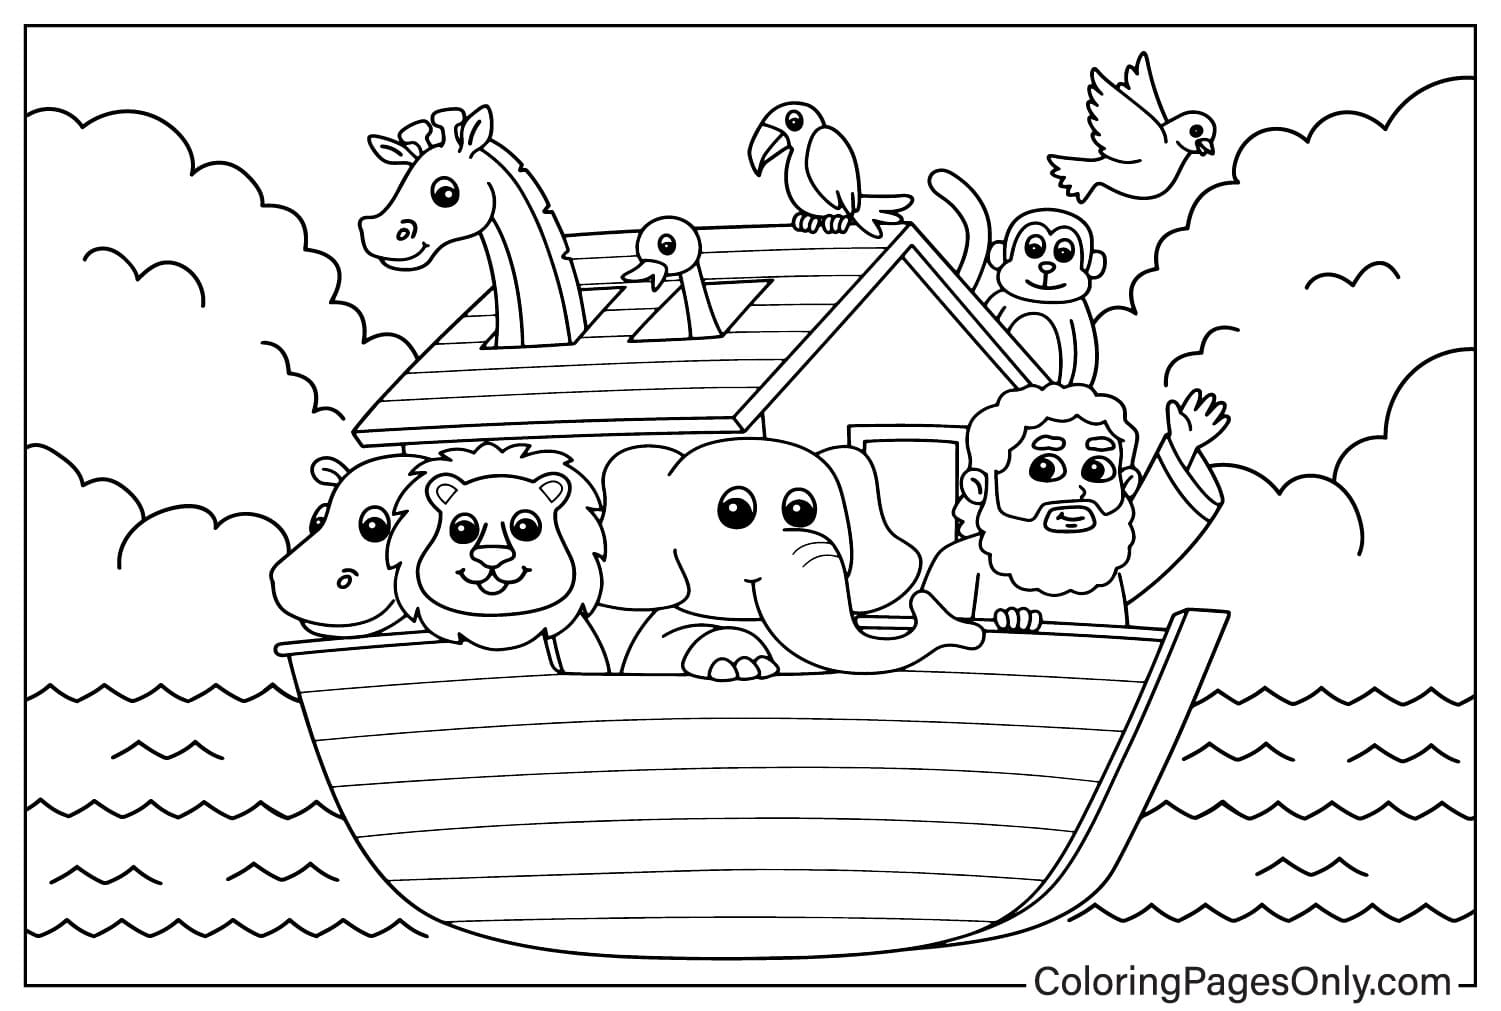 Foglio da colorare dell'Arca di Noè dall'Arca di Noè